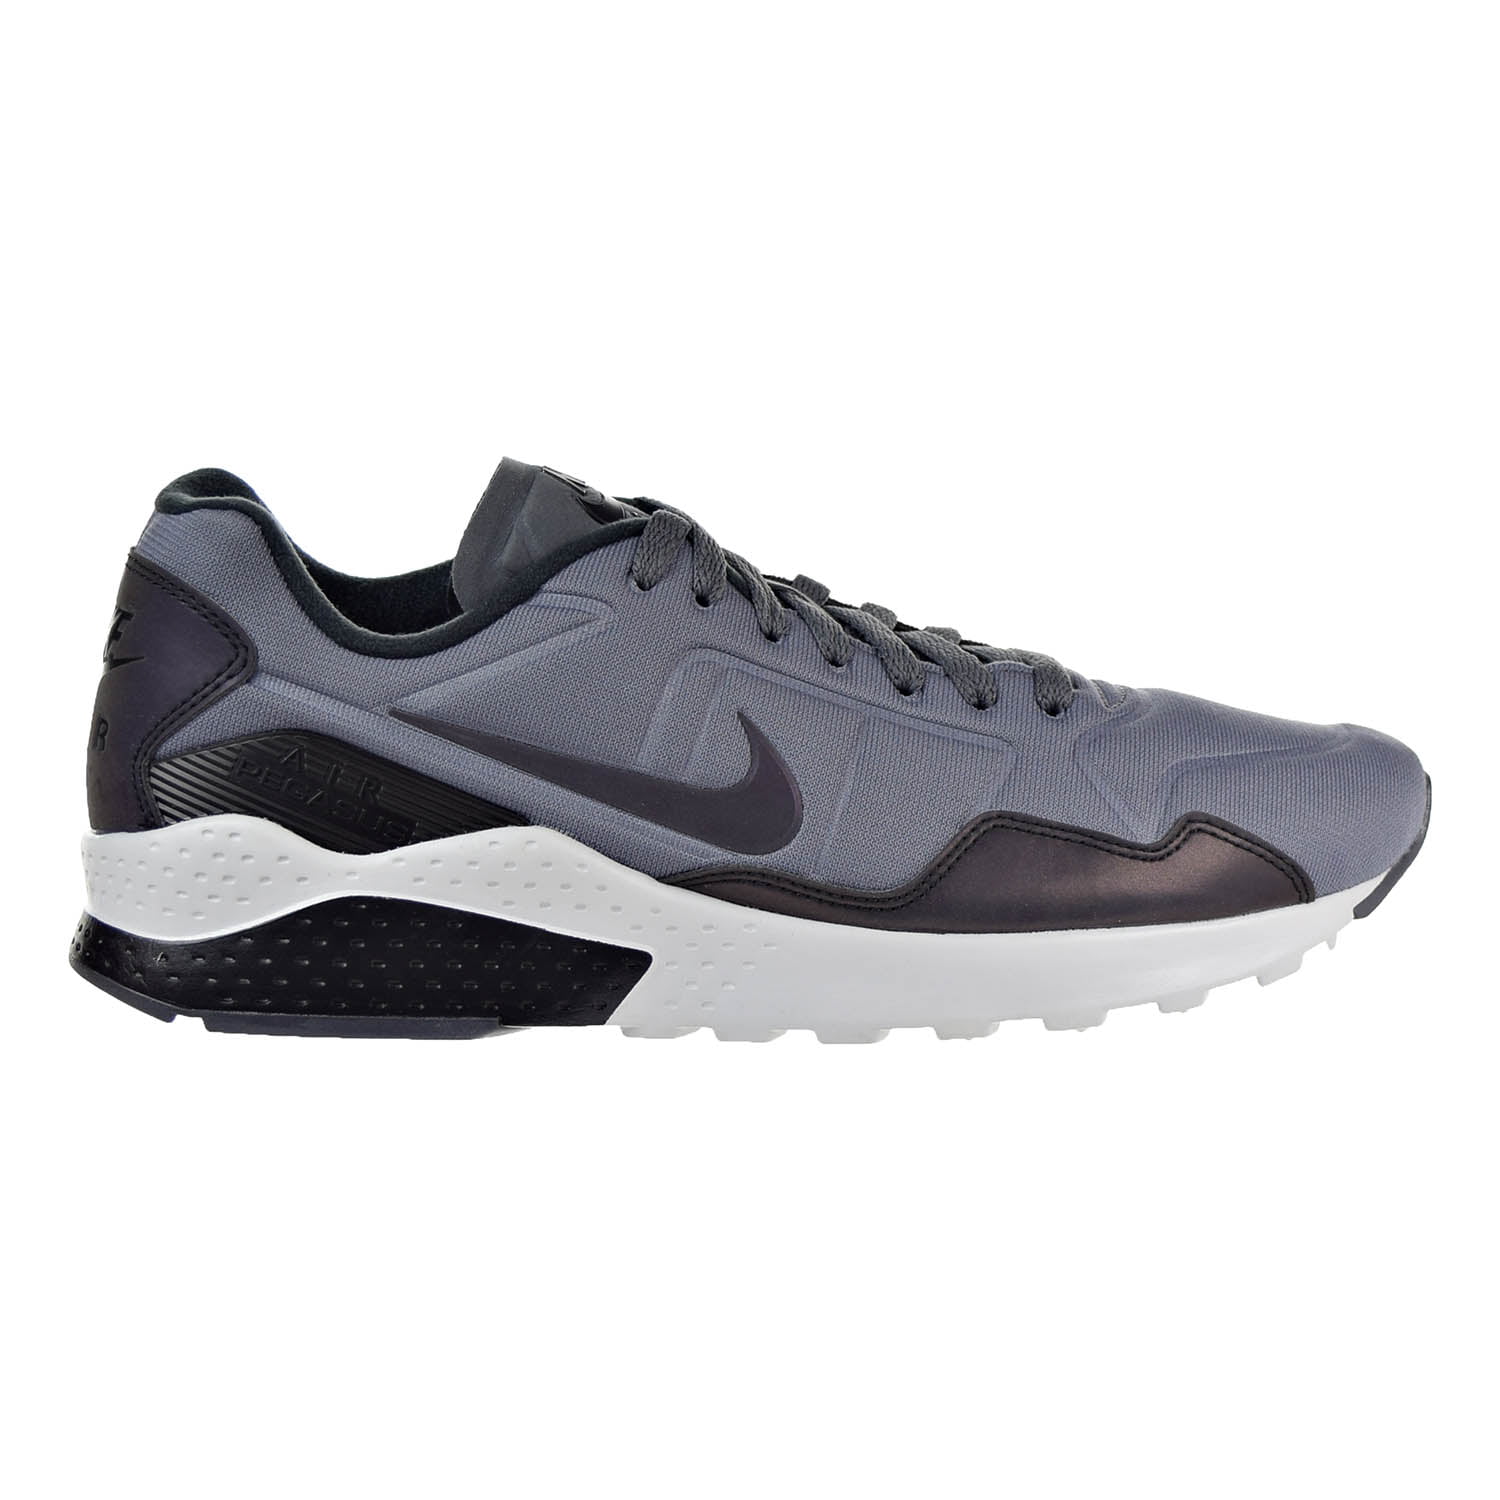 Nike Air Zoom Pegasus 92 Premium Men's Shoes Dark Grey/Black/Pure Platinum 844654-004